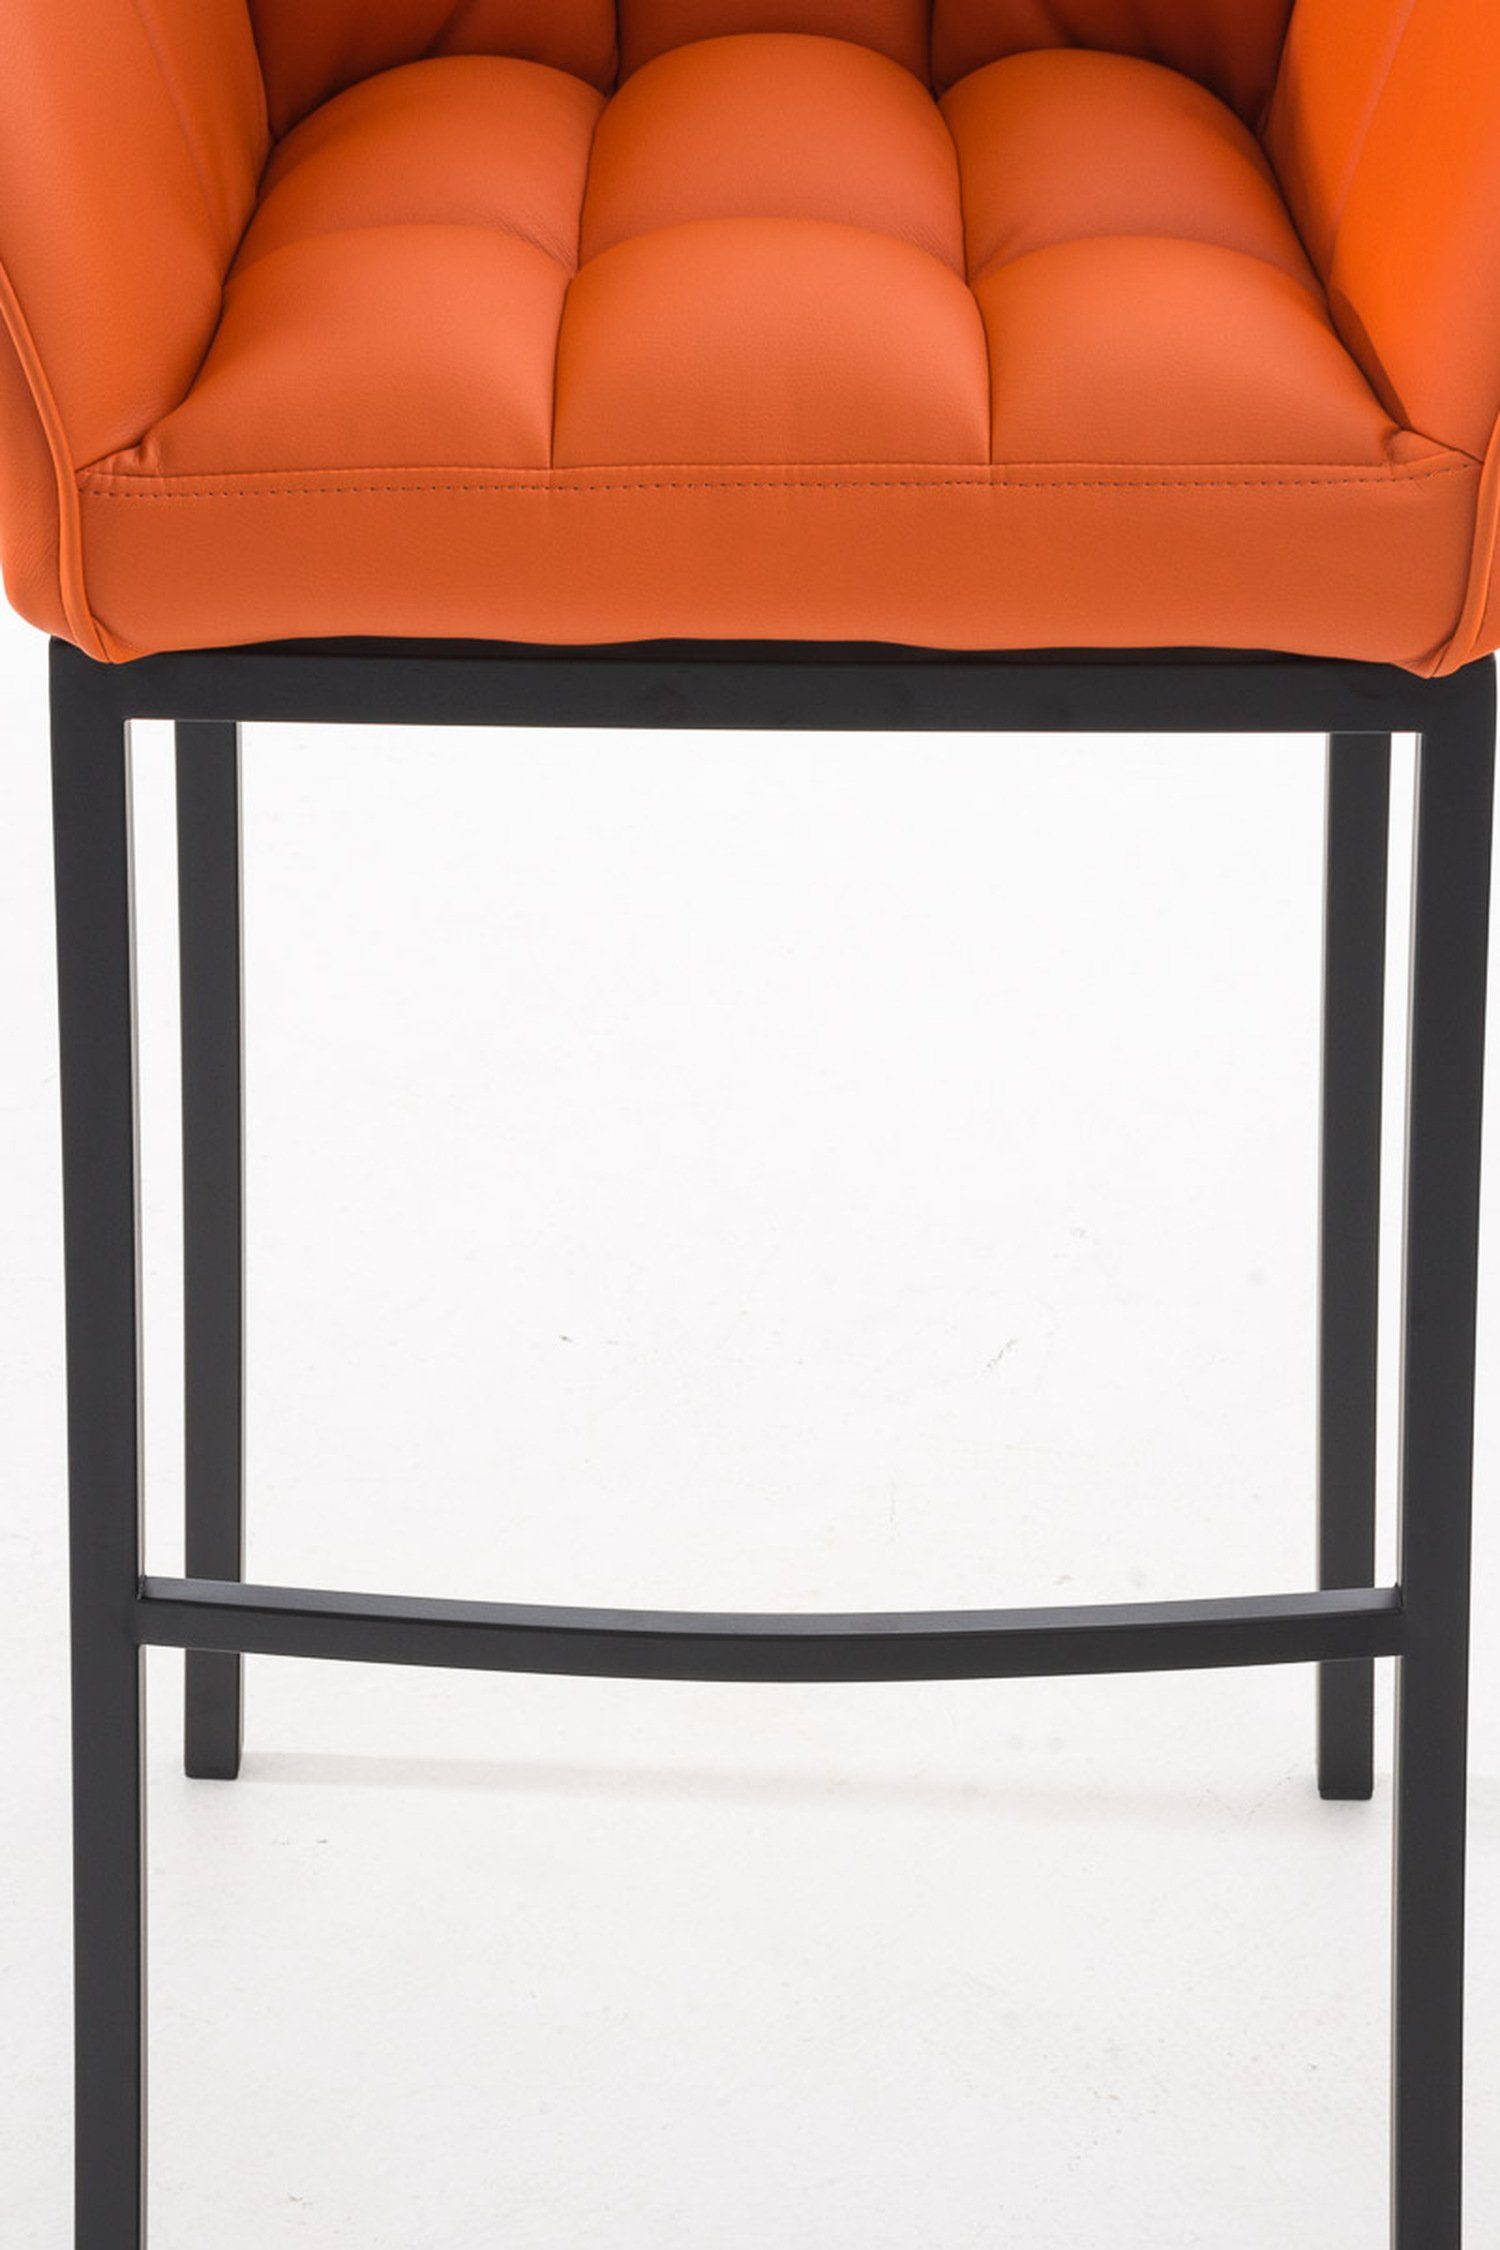 Hocker Sitzfläche: & - und (mit Theke Orange Rückenlehne Kunstleder 4-Fuß - für TPFLiving Barhocker Küche), schwarz Fußstütze Damaso Gestell